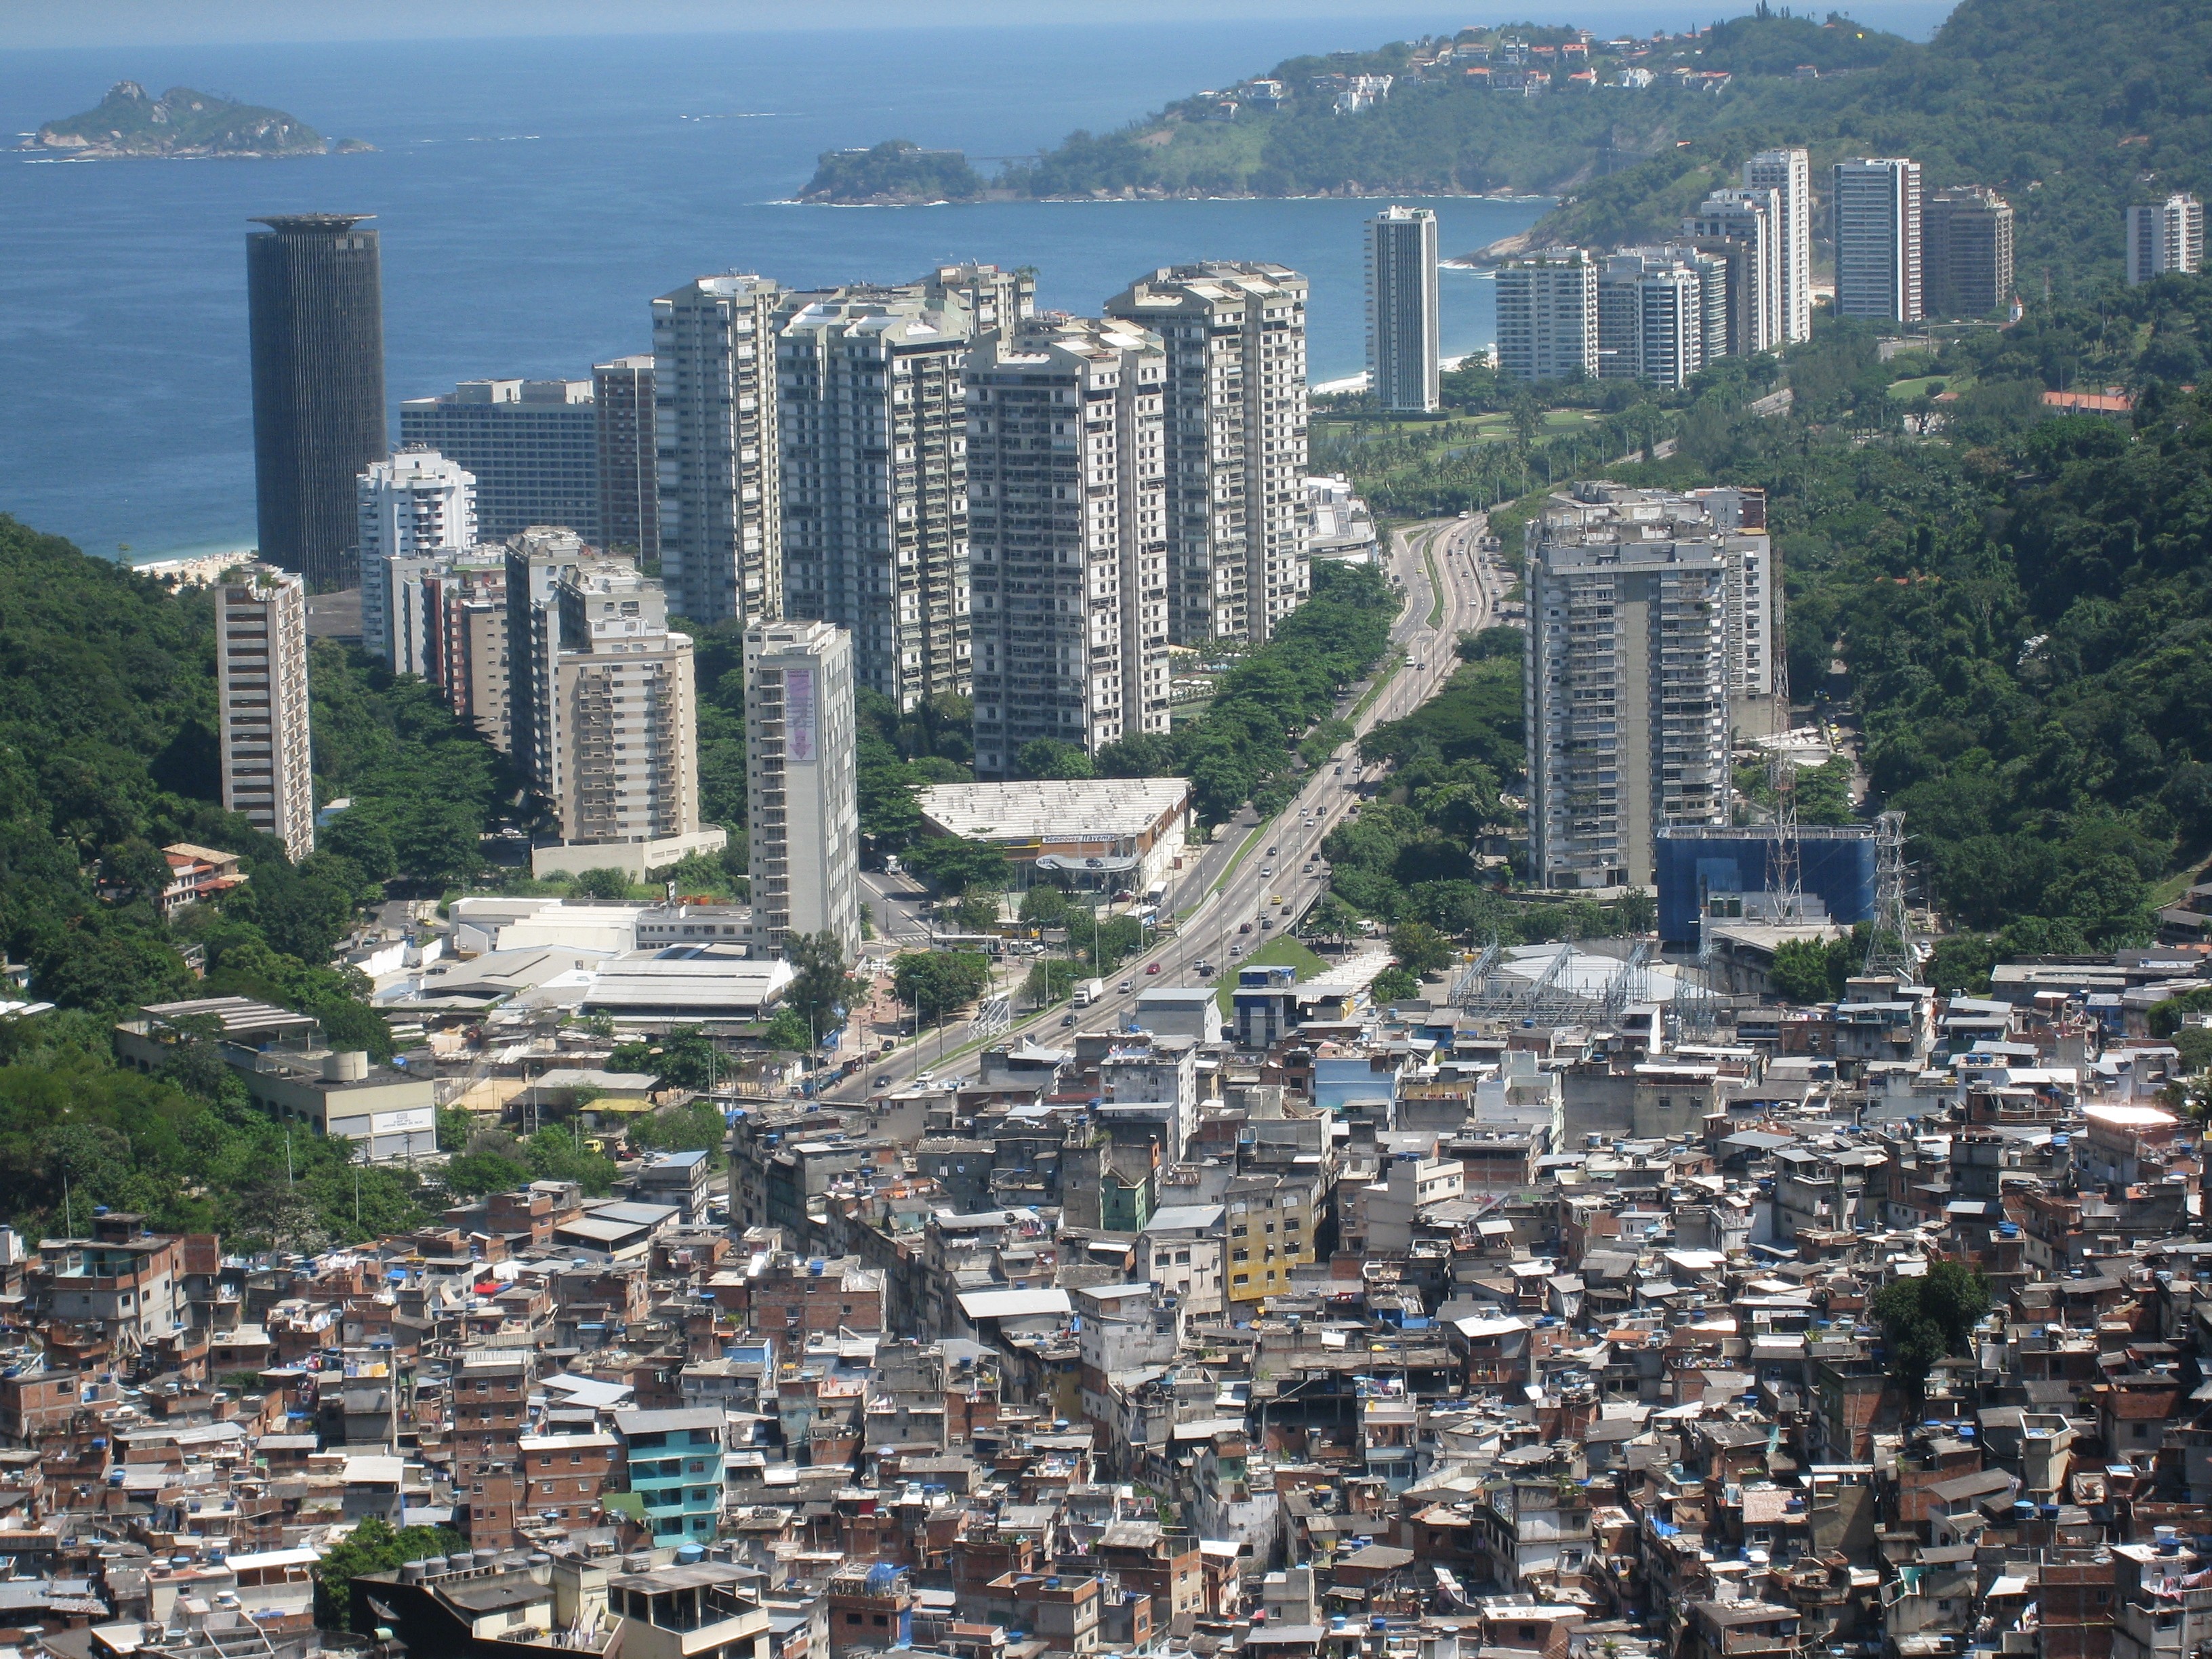 Vista aérea da favela da Rocinha, no Rio de Janeiro (Foto: Wikimedia Commons)